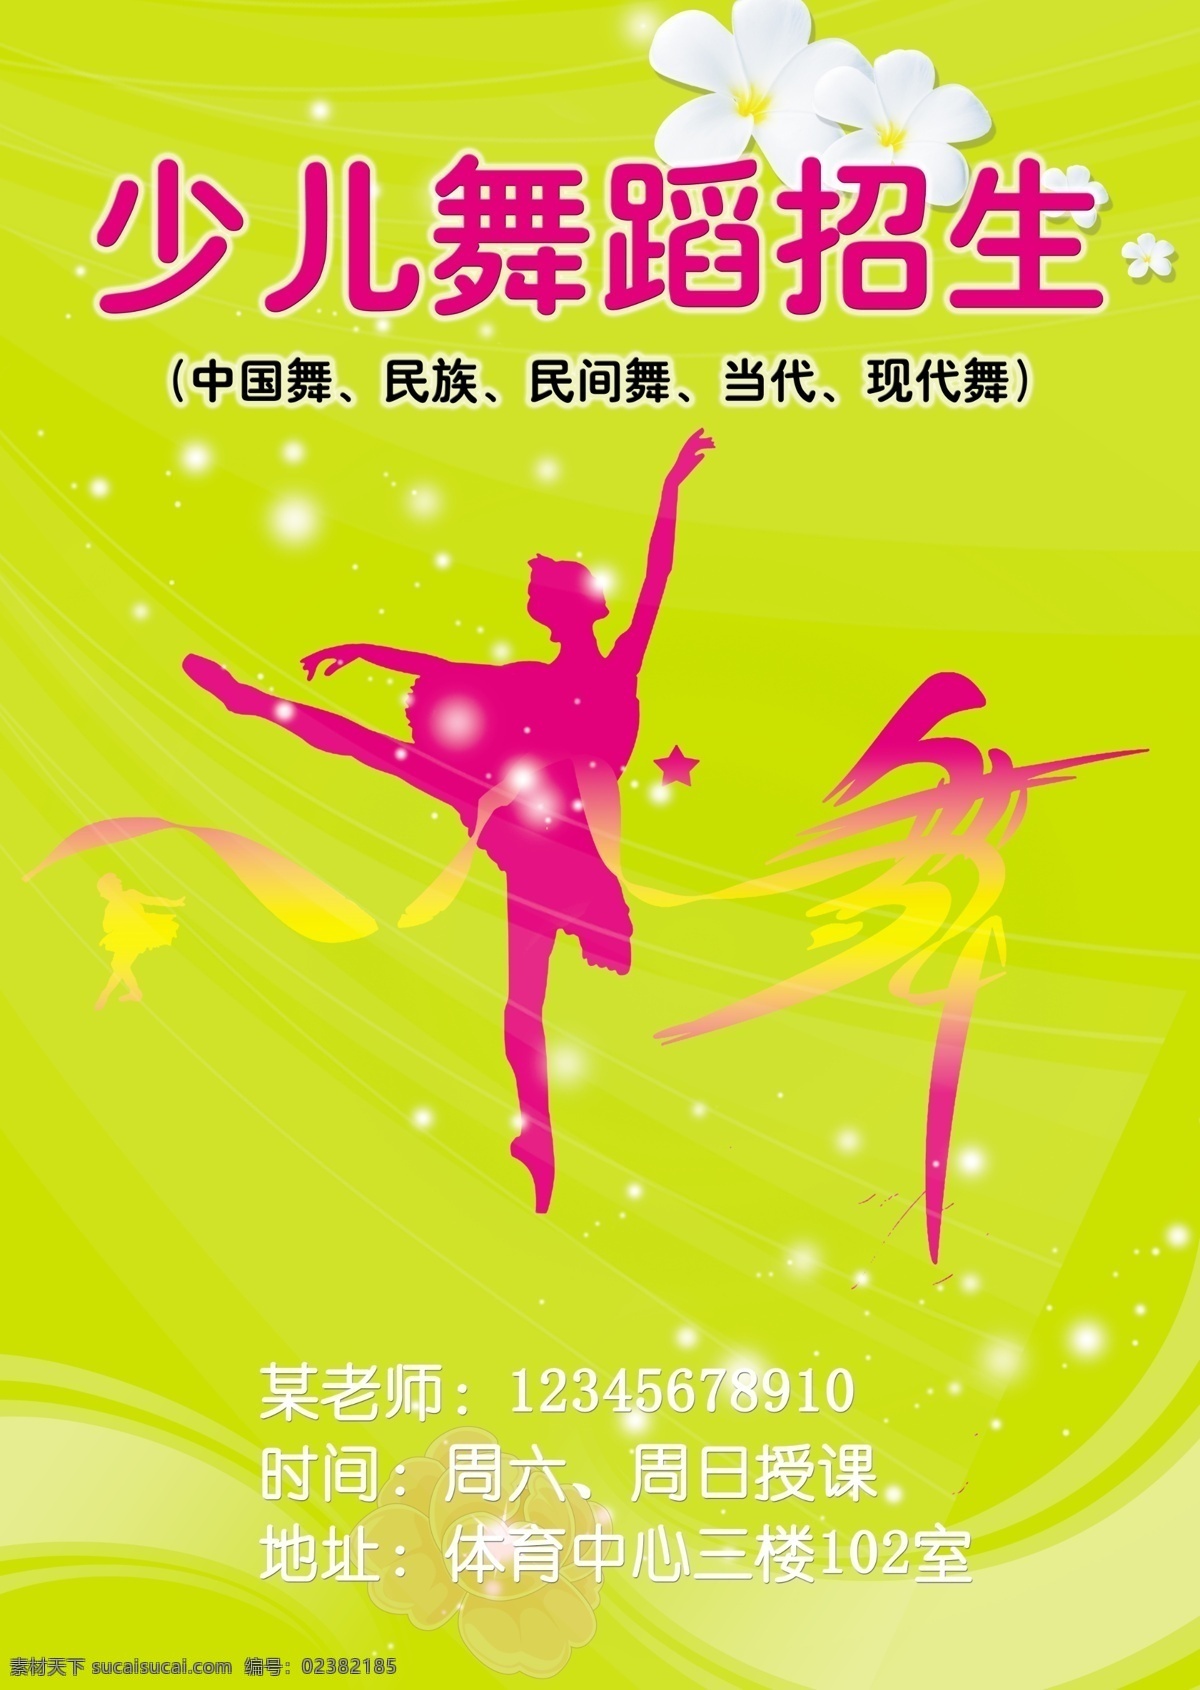 舞蹈招生海报 少儿舞蹈招生 中国舞 民族舞 民间舞 当代舞 现代舞 广告设计模板 源文件